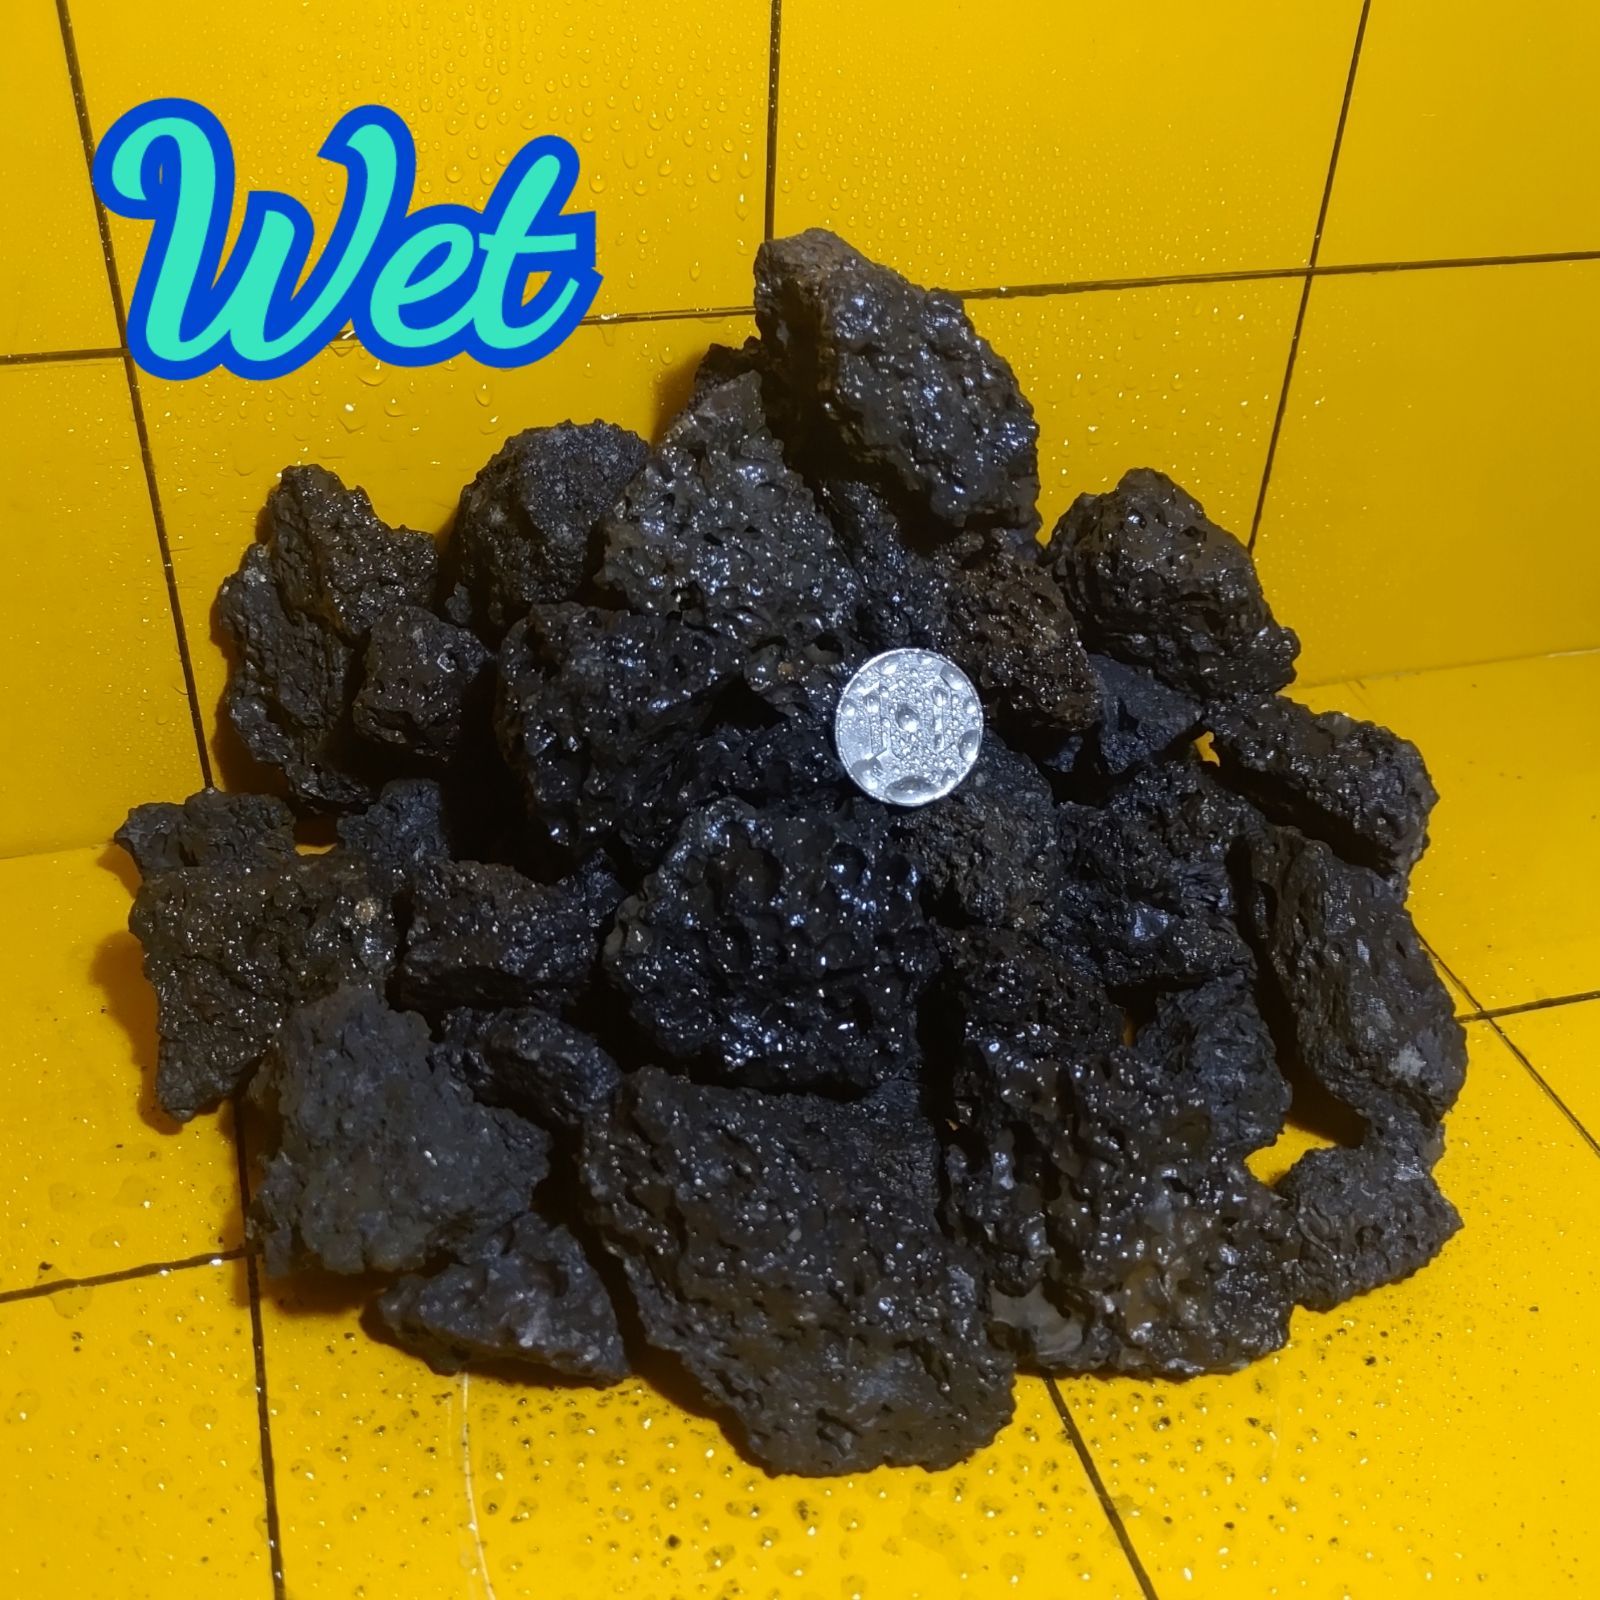 富士山溶岩石 【もっと！小粒】2kg 10-40mm アクアリウム 水槽 盆栽